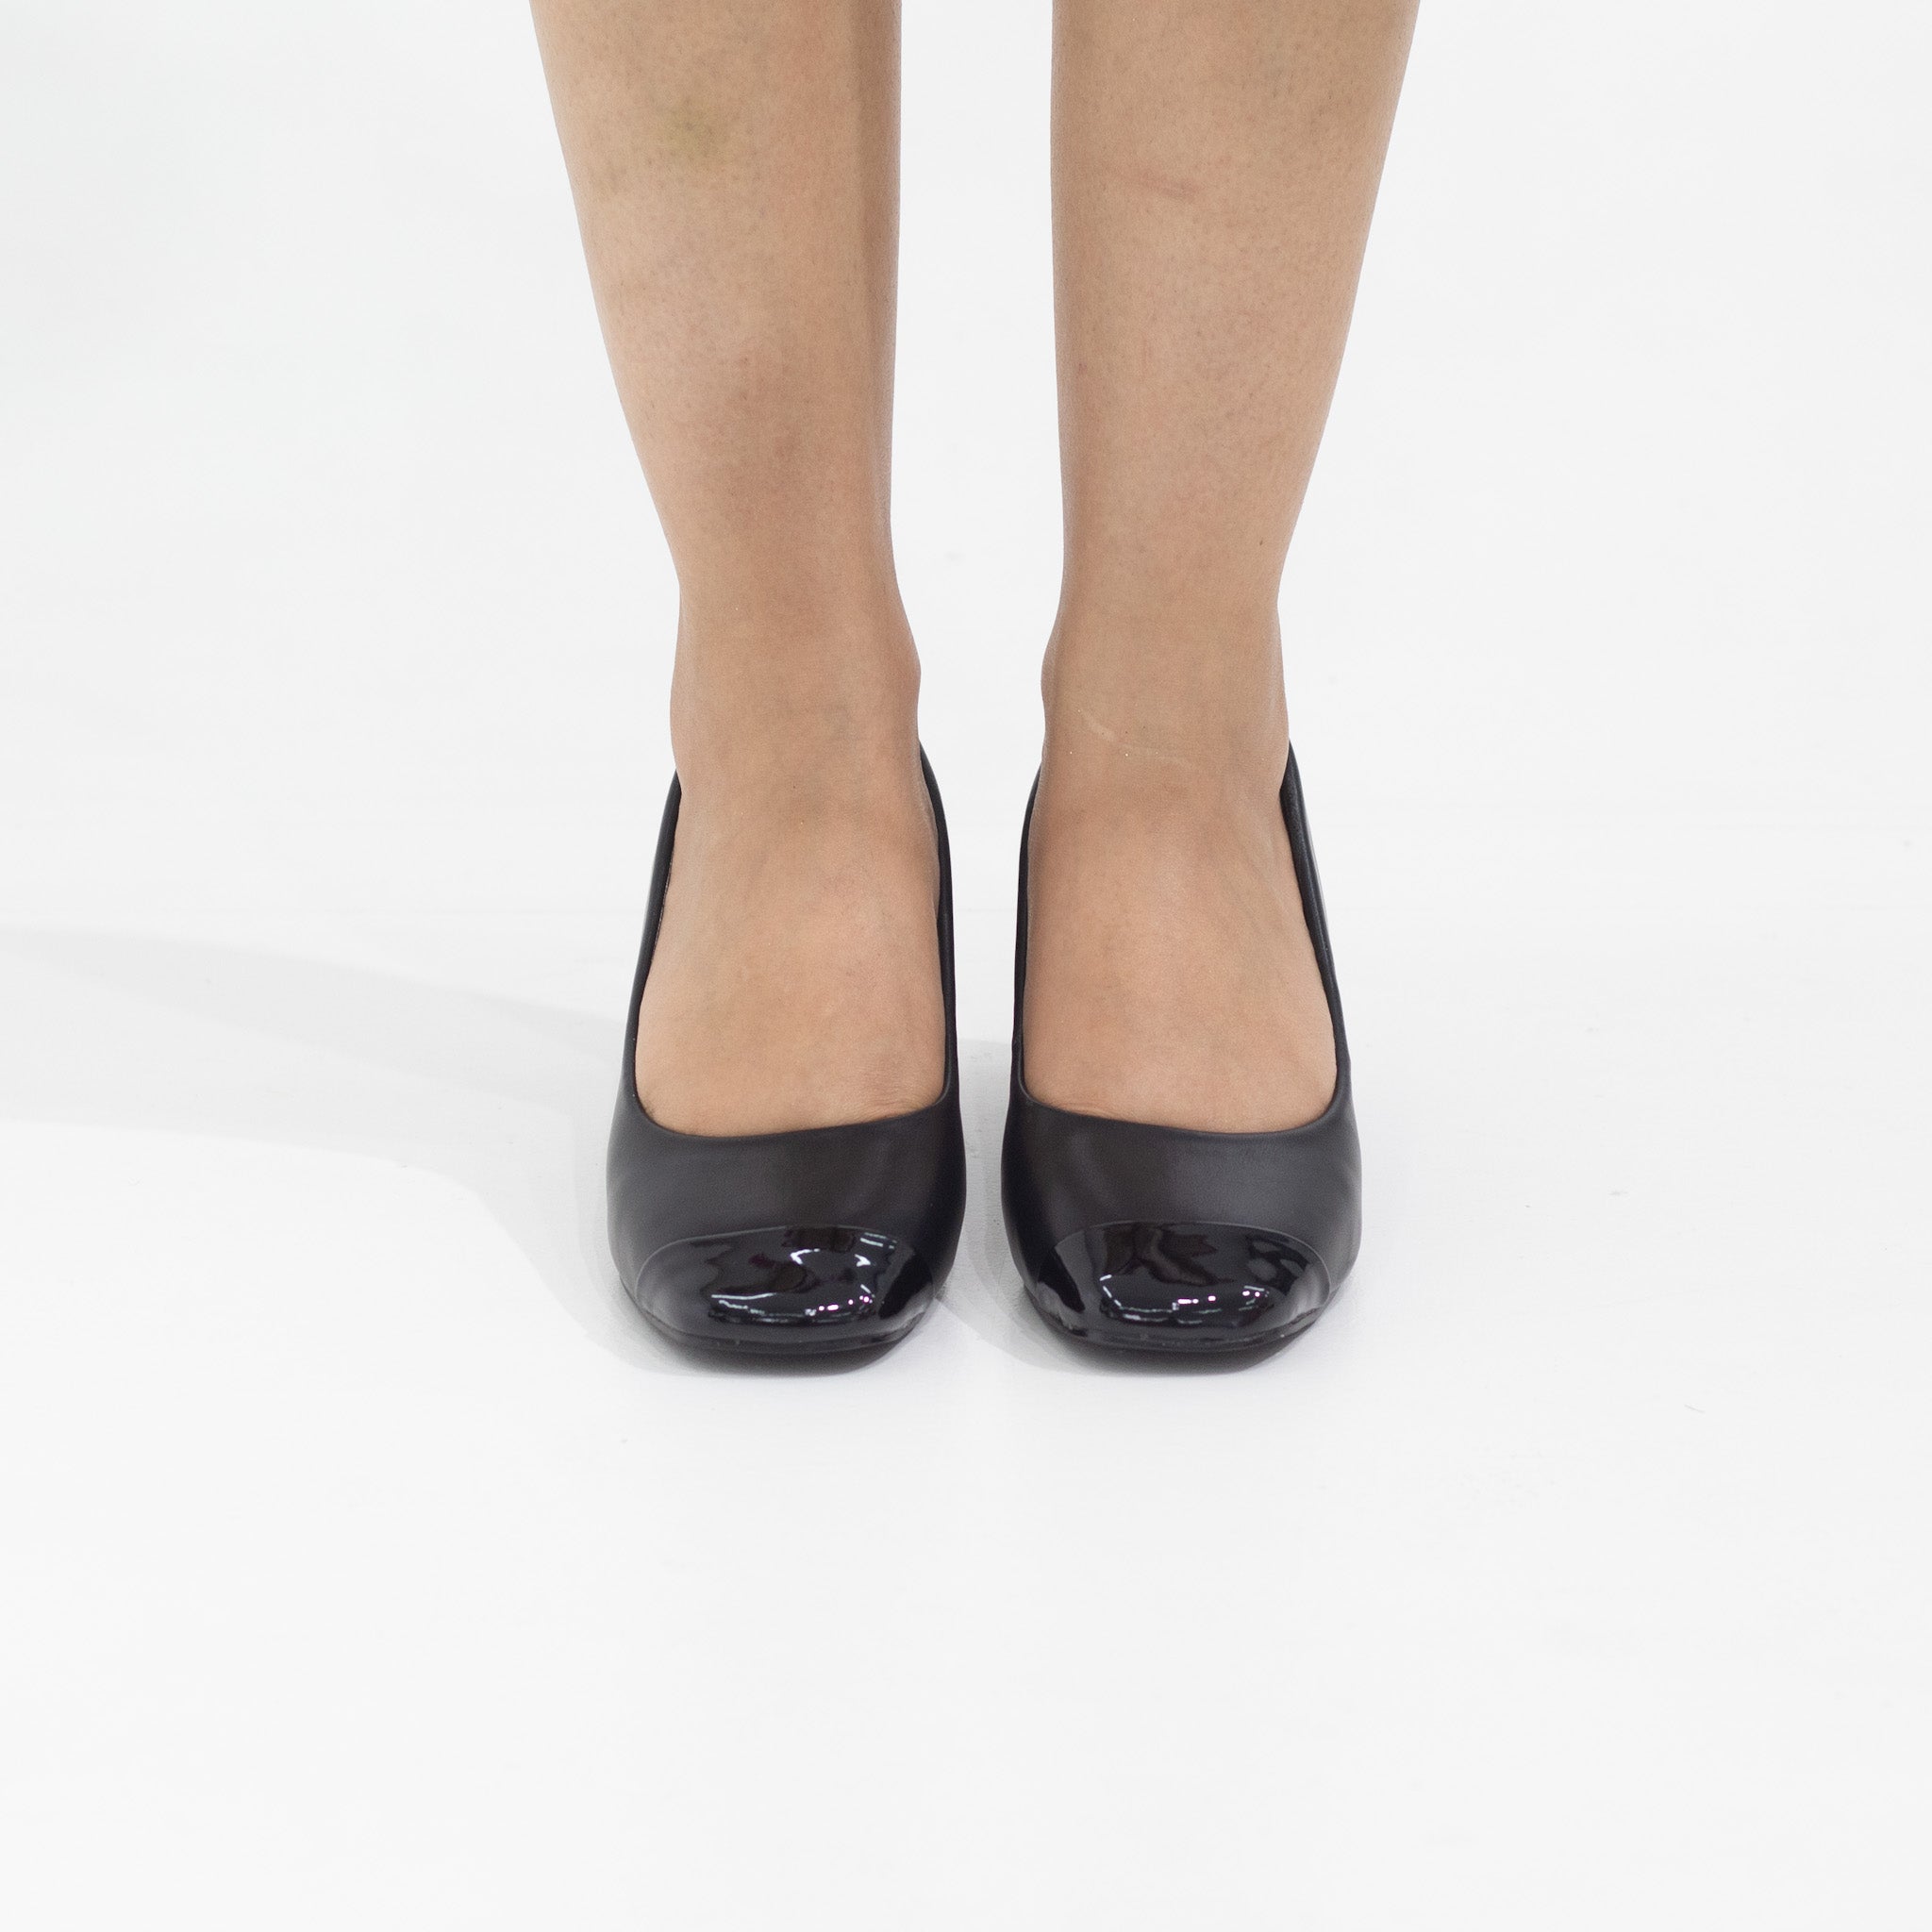 Black comfy 5cm heel pointy court shoe delilah